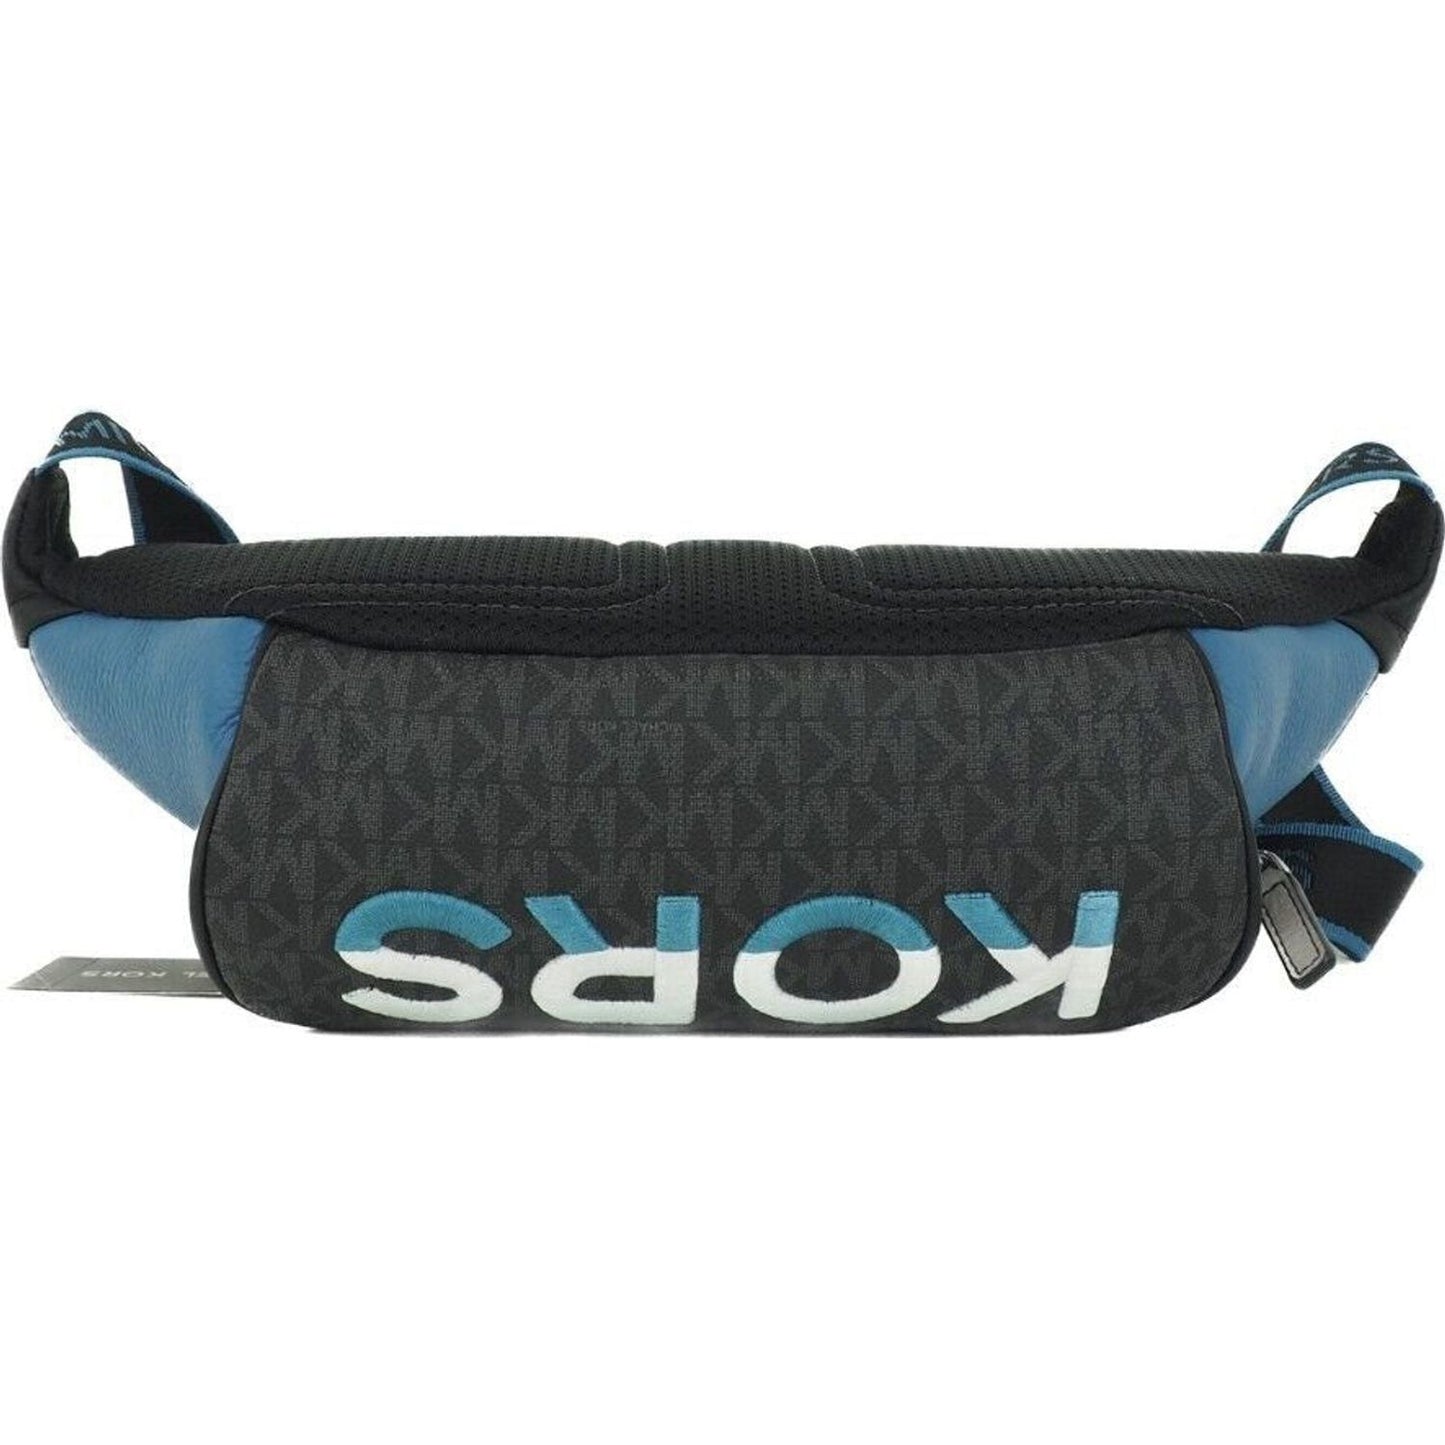 Michael Kors | Cooper Large Blue Multi Leather Embroidered Logo Utility Belt Bag  | McRichard Designer Brands